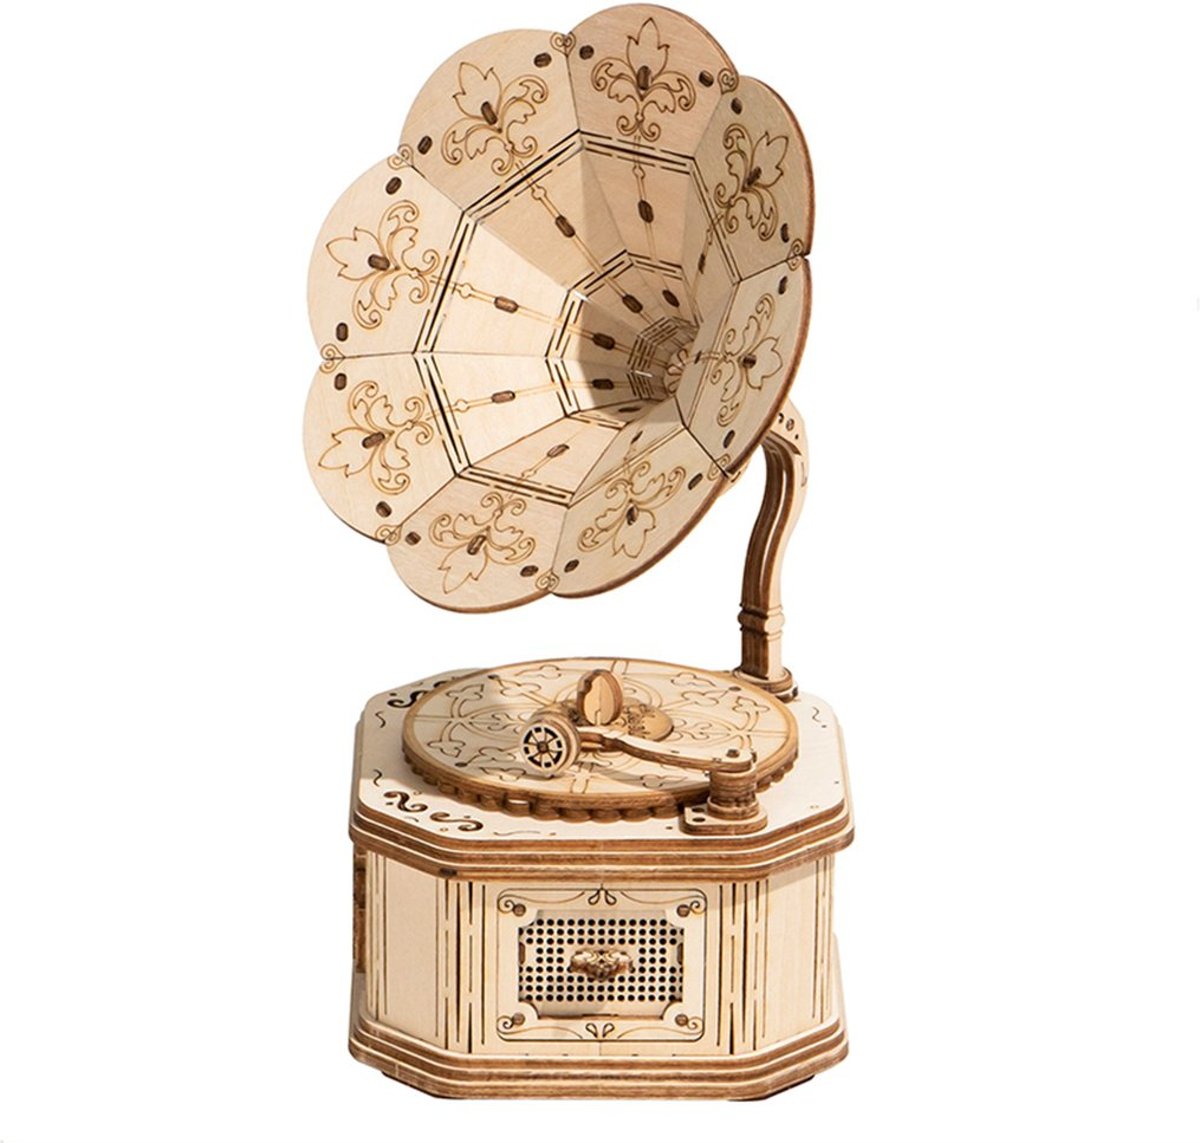 Modern 3D Wooden Puzzel Gramophone